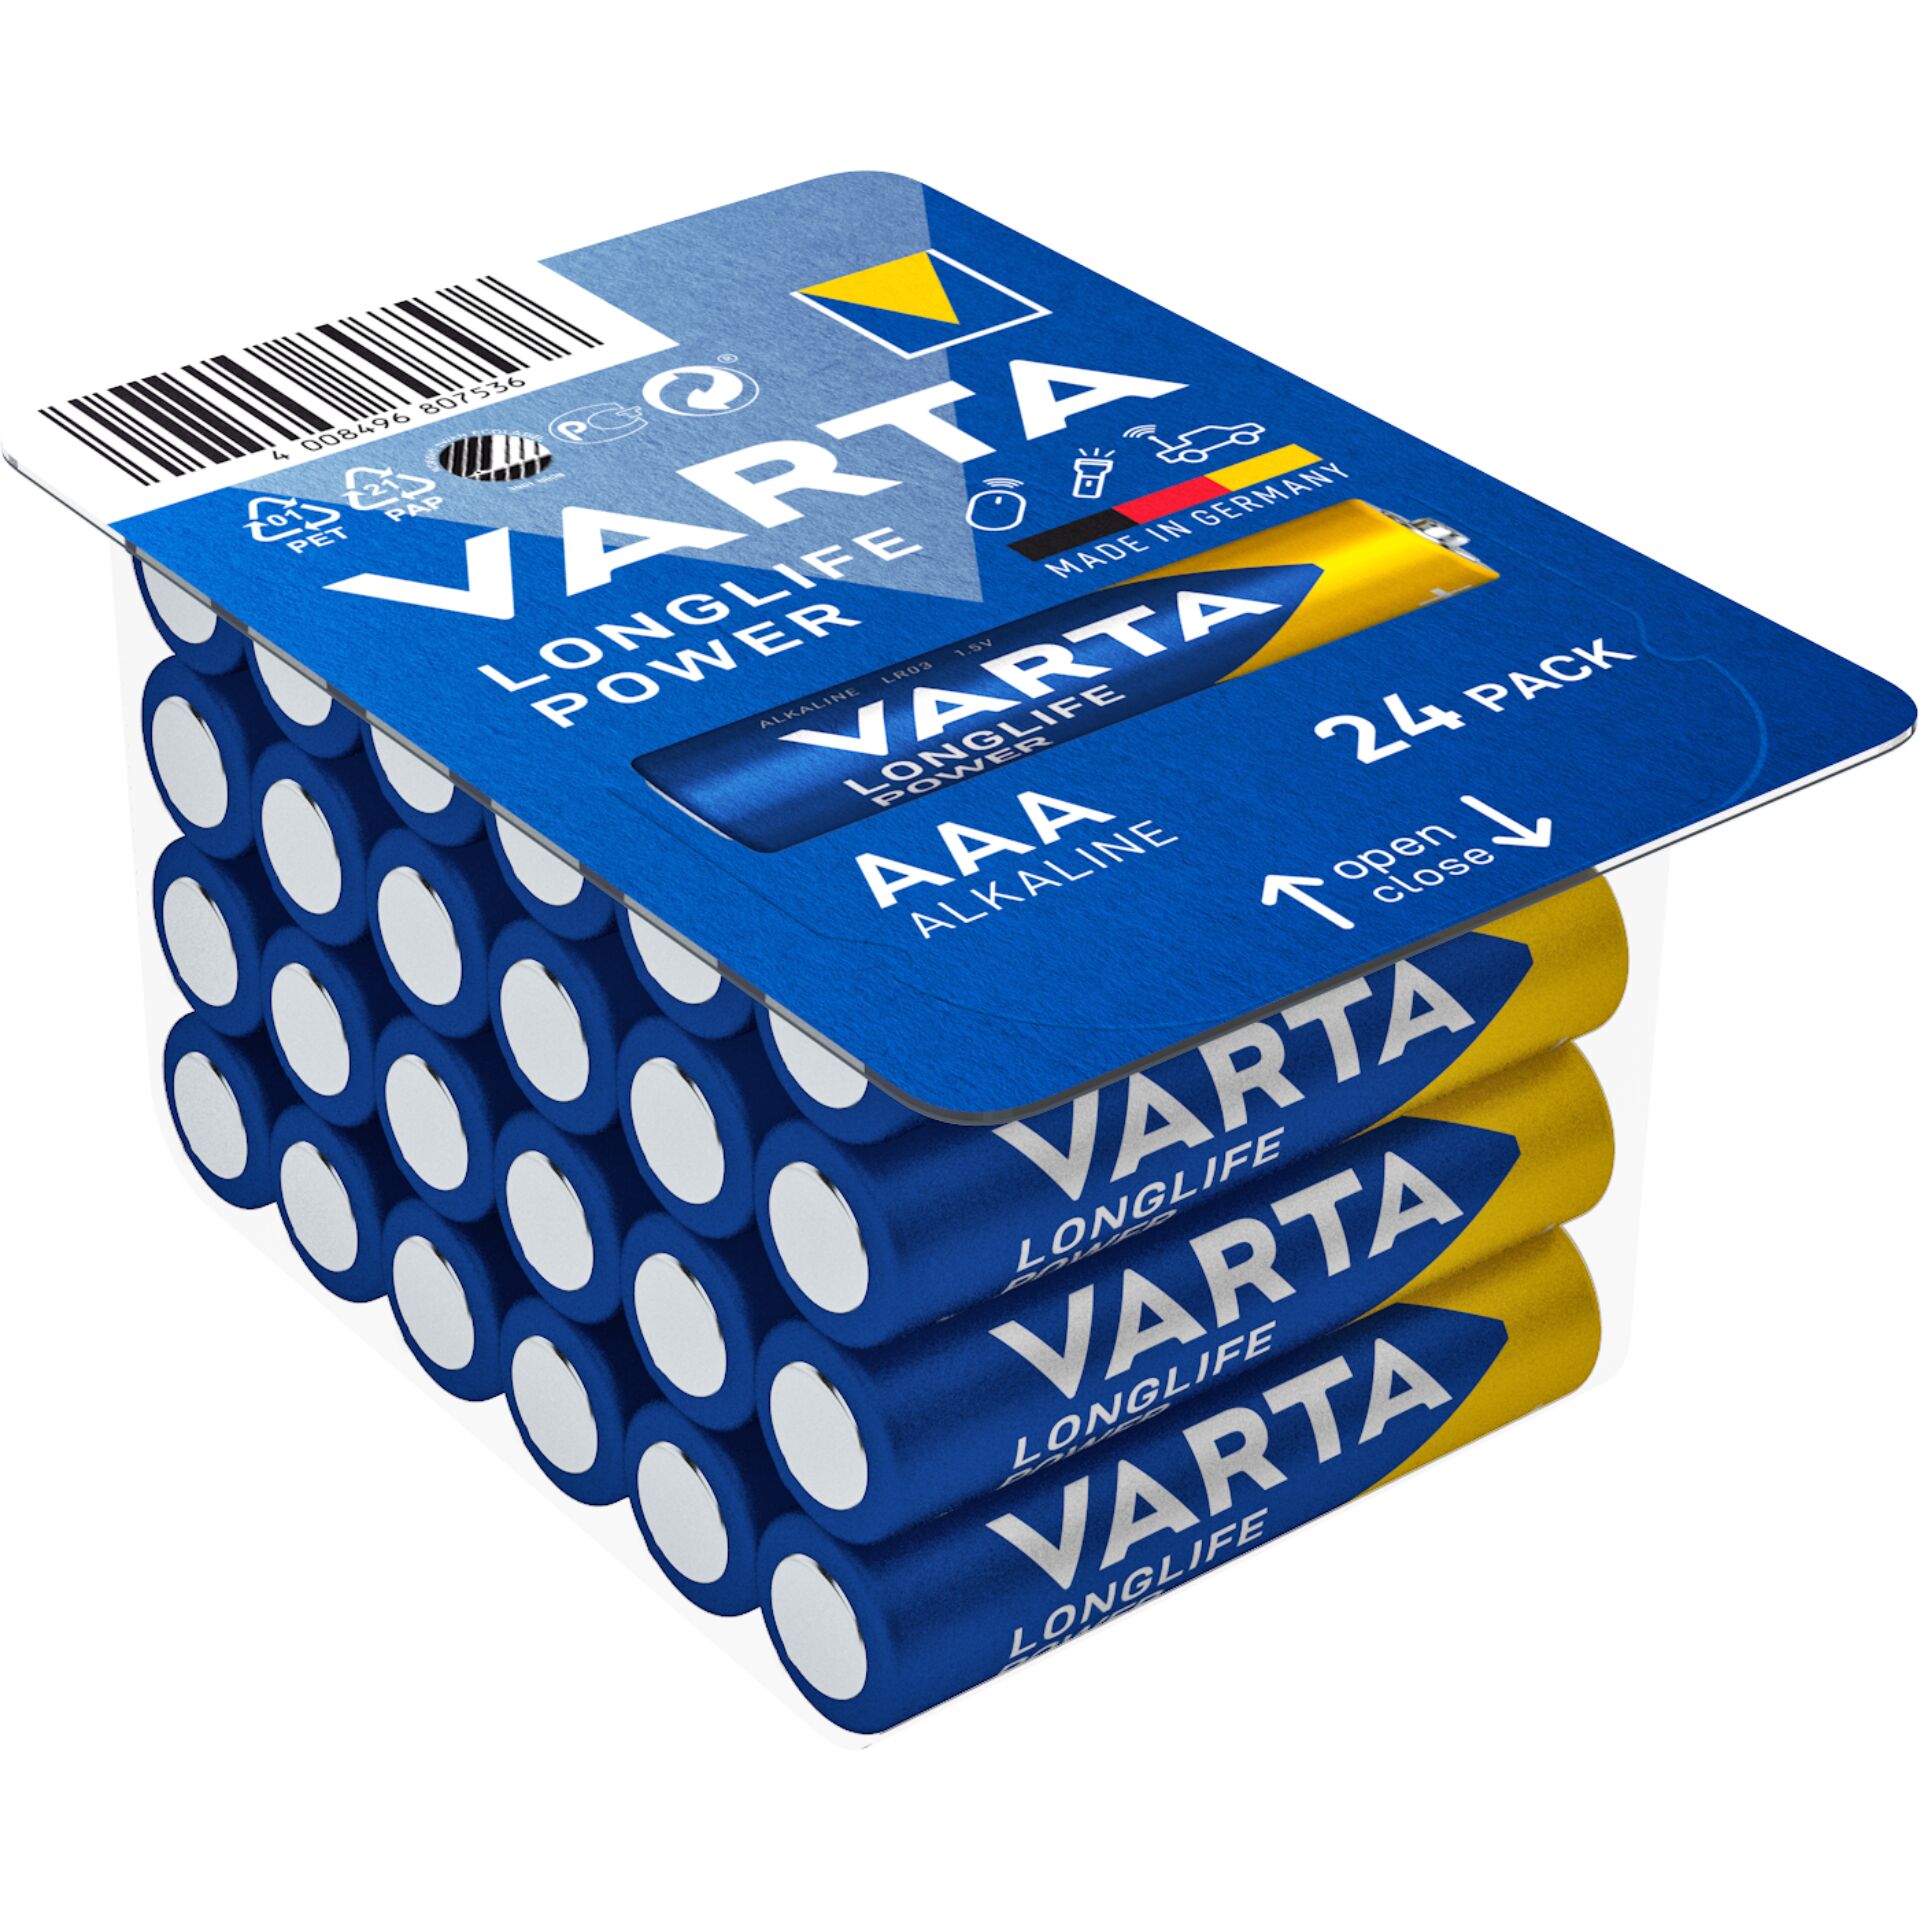 Varta High Energy LR03-AAA, Alkali, 1.5V, 24er-Pack Batterie 